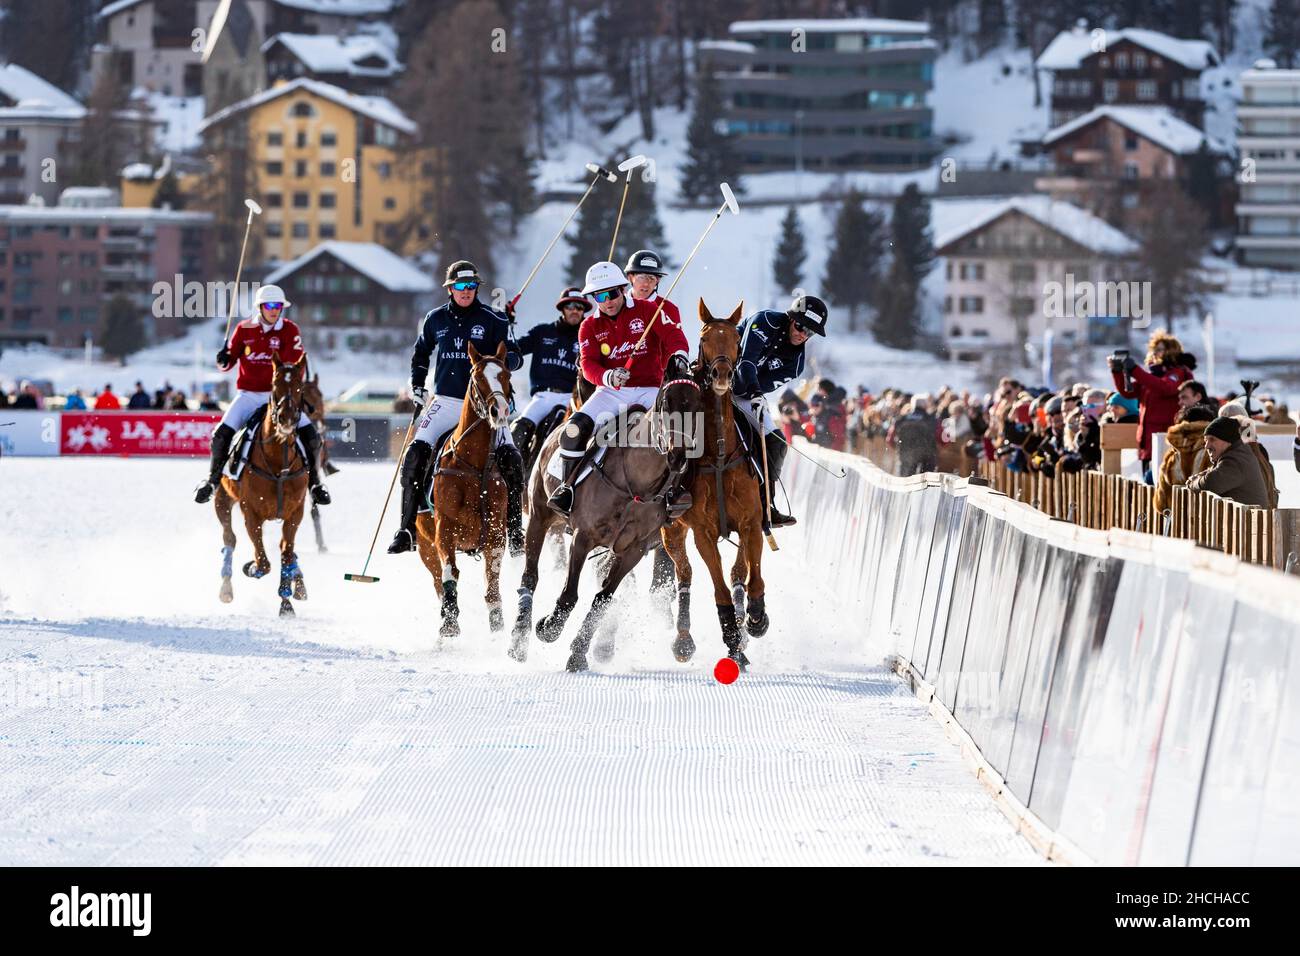 Spieler vom Team Maserati (blau) und Spieler vom Team St. Moritz (rot) kämpfen mit voller körperlicher Anstrengung auf der Schiene um den Ball, 36th Snow Polo Stockfoto